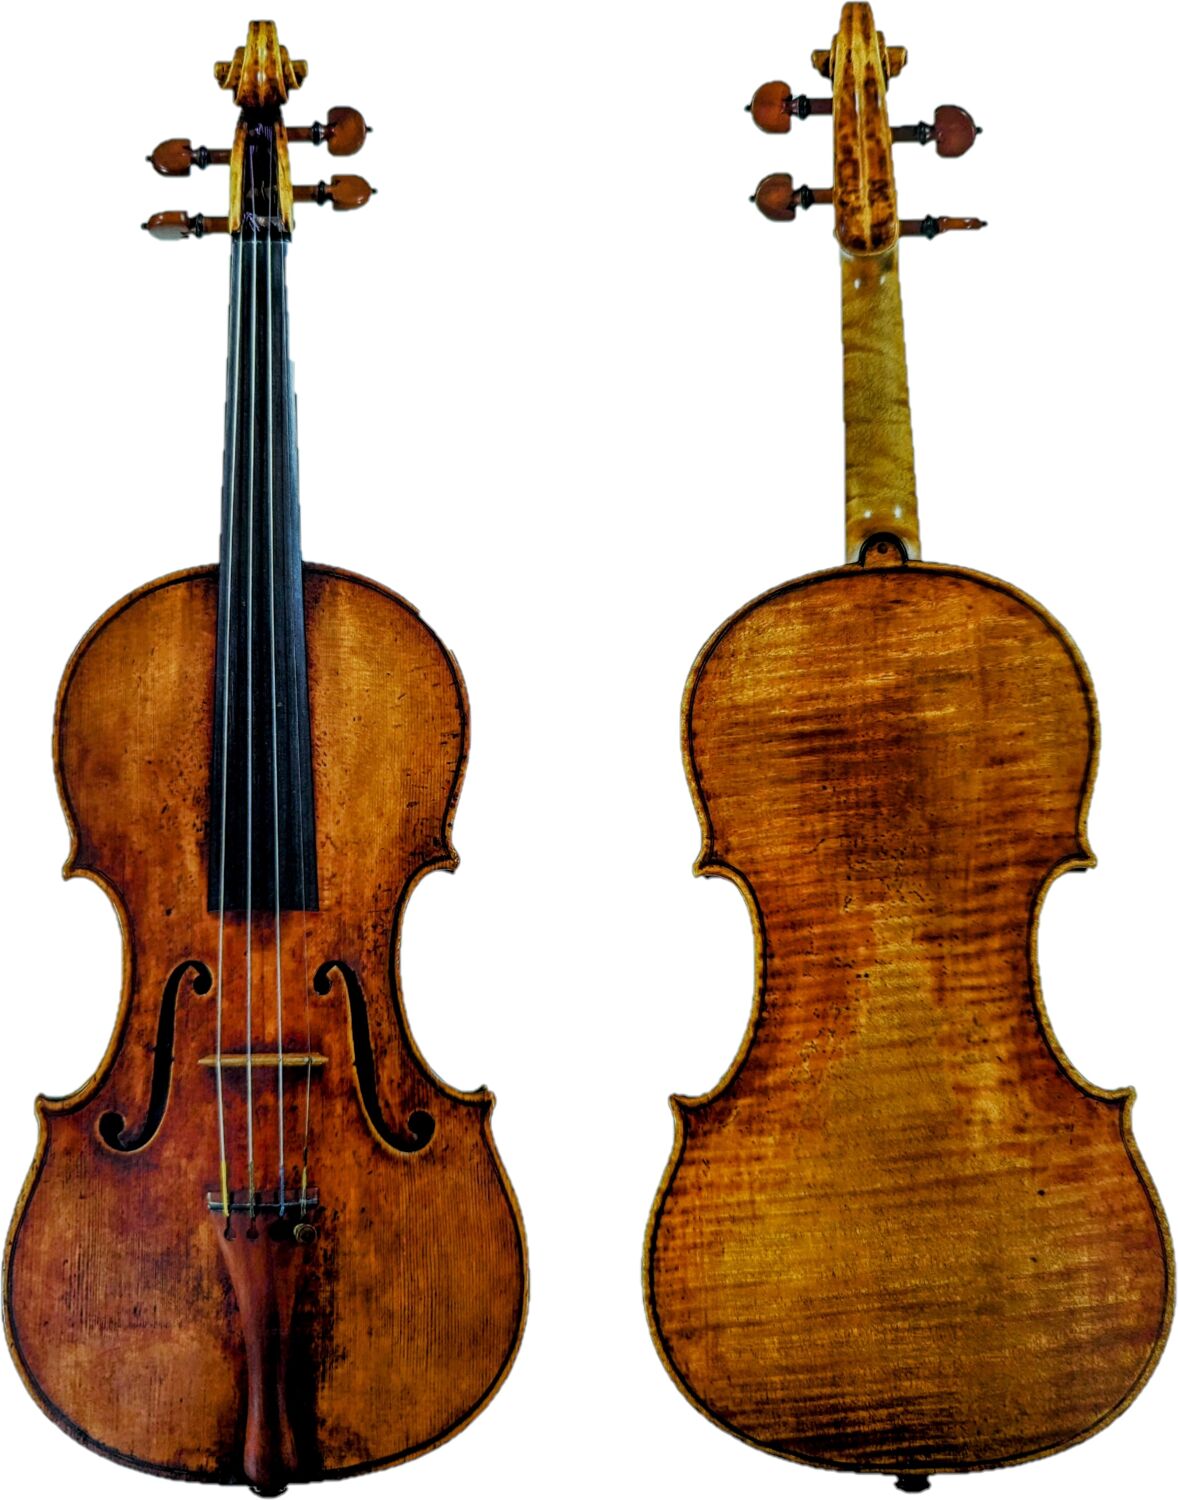 About - Scott Cao Violins